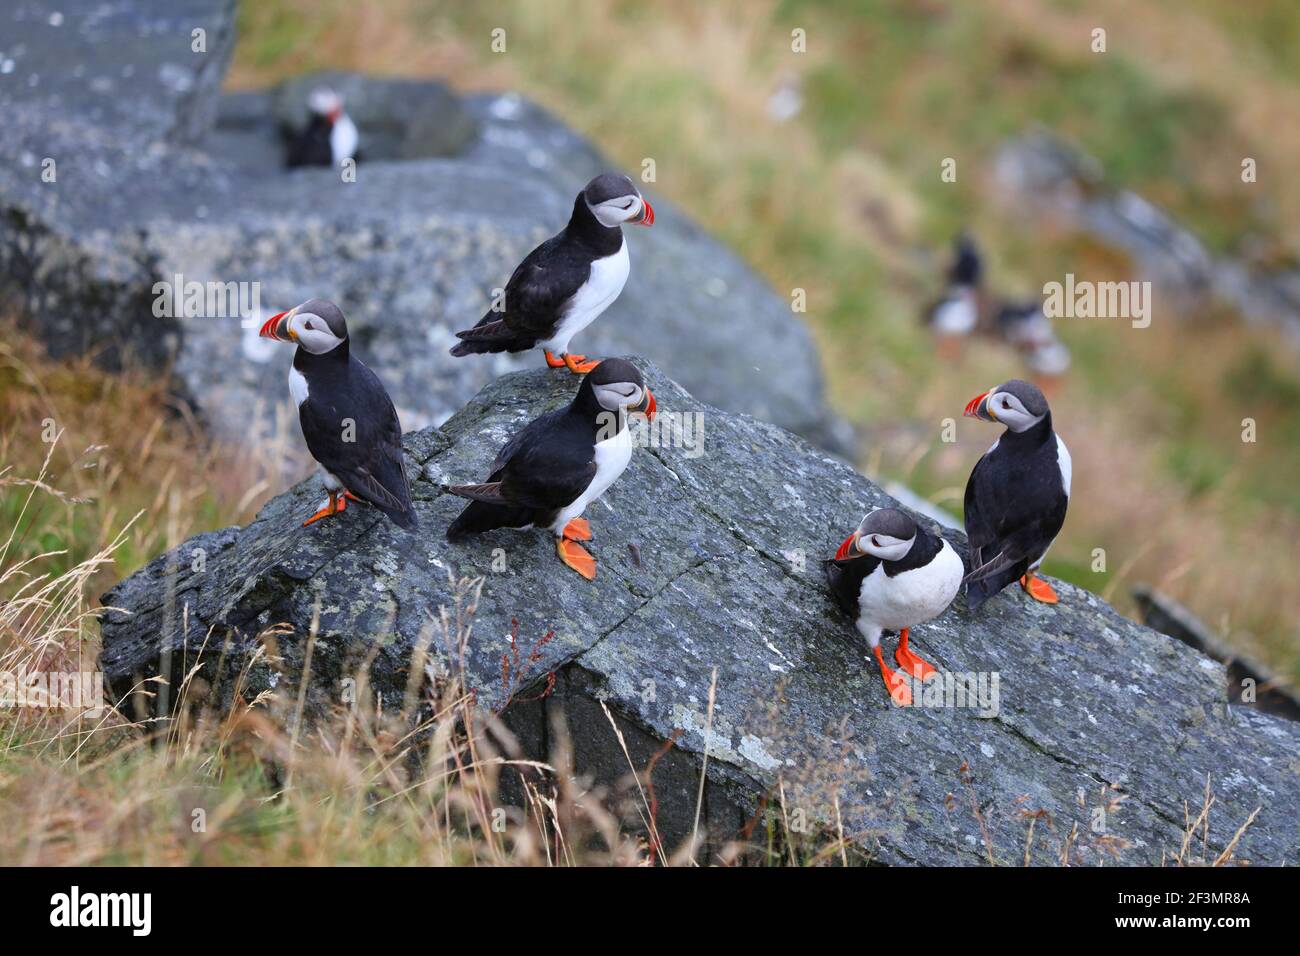 Puffin aves en Noruega tiempo lluvioso. Observación de aves en la isla de Runde. Especies de aves marinas de frailecillos del Atlántico (Fraterncula arctica). Foto de stock